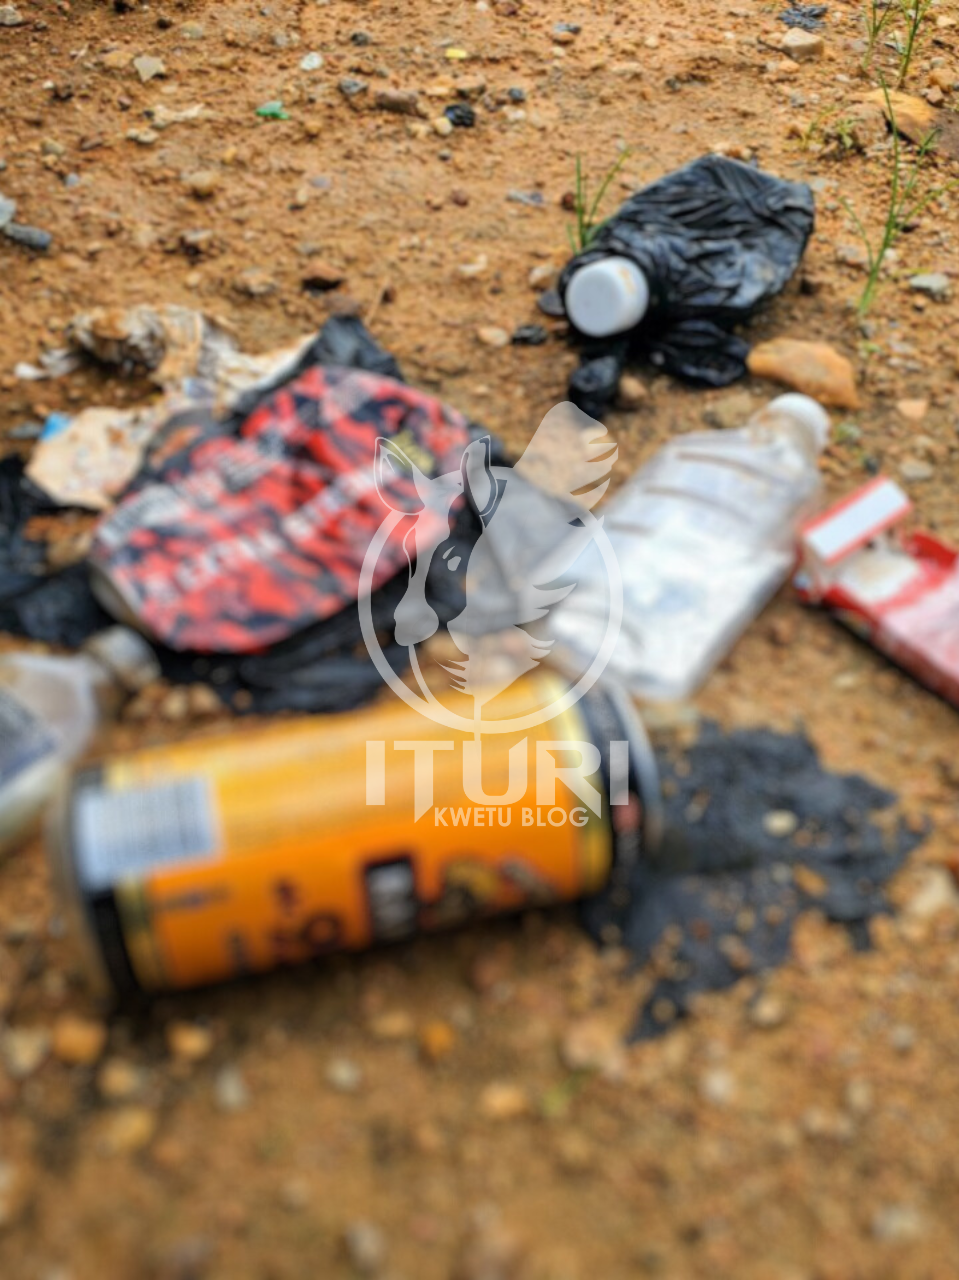 Ituri : 2 jeunes de la vingtaine trouvent la mort suite à la prise excessive d’alcool à Djugu